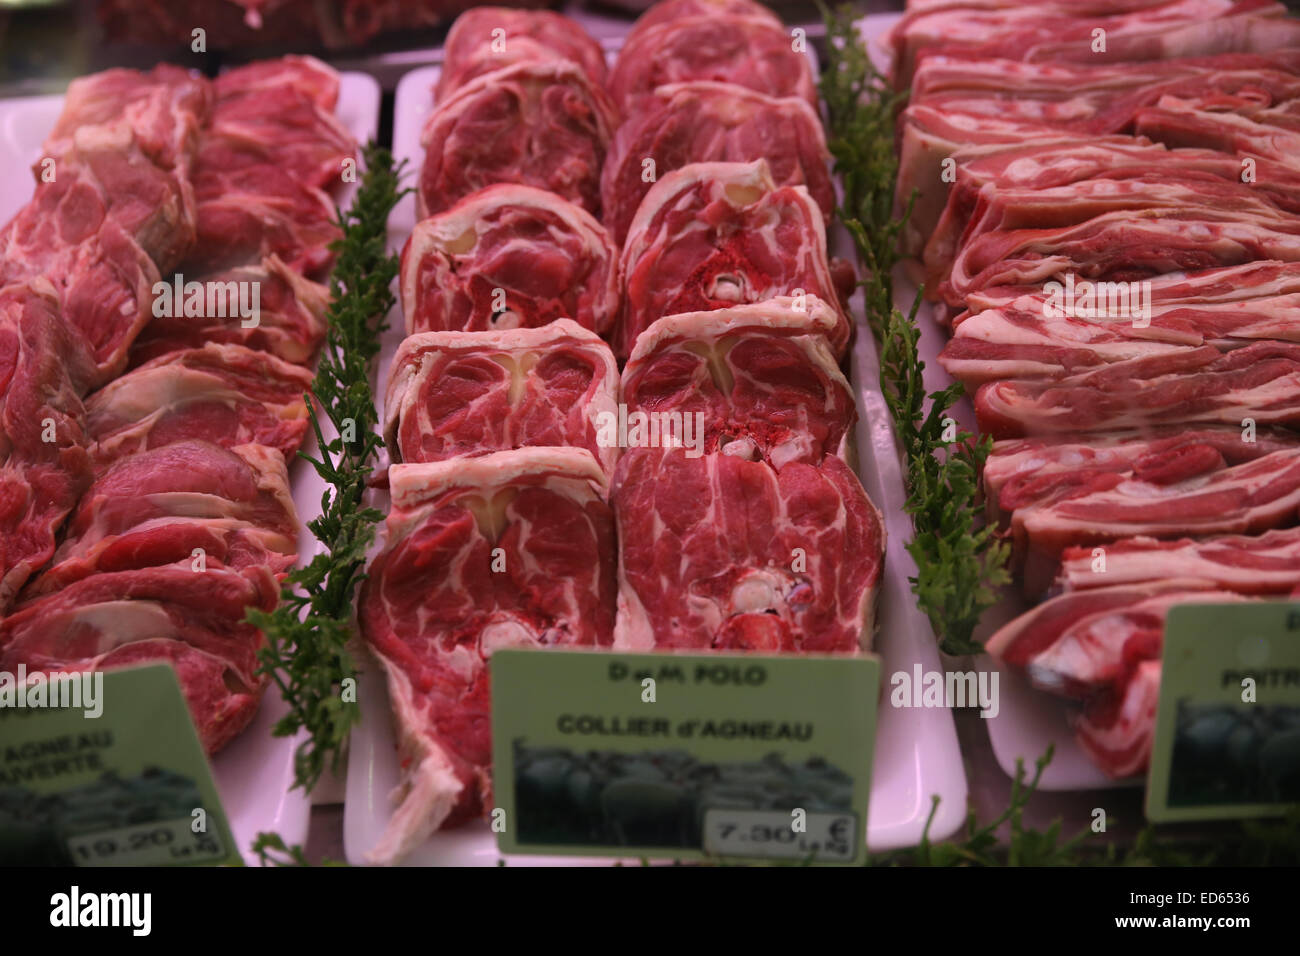 Paris Frischwaren Markt Fleisch Abschnitt Stockfoto